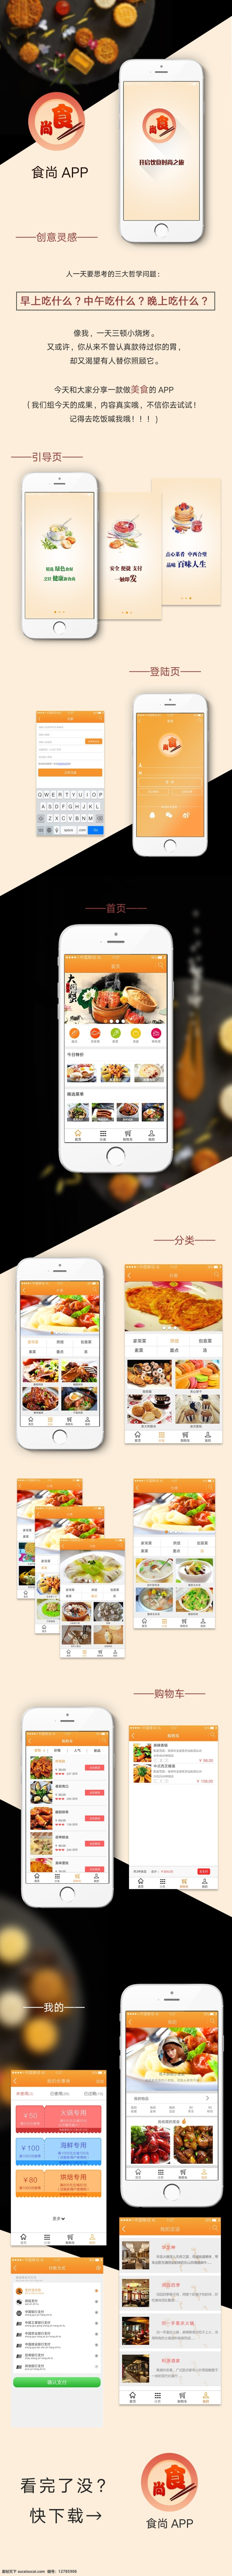 食 尚 app 效果图 app设计 食品类 原创 ui界面设计 ui 交互 界面设计 白色